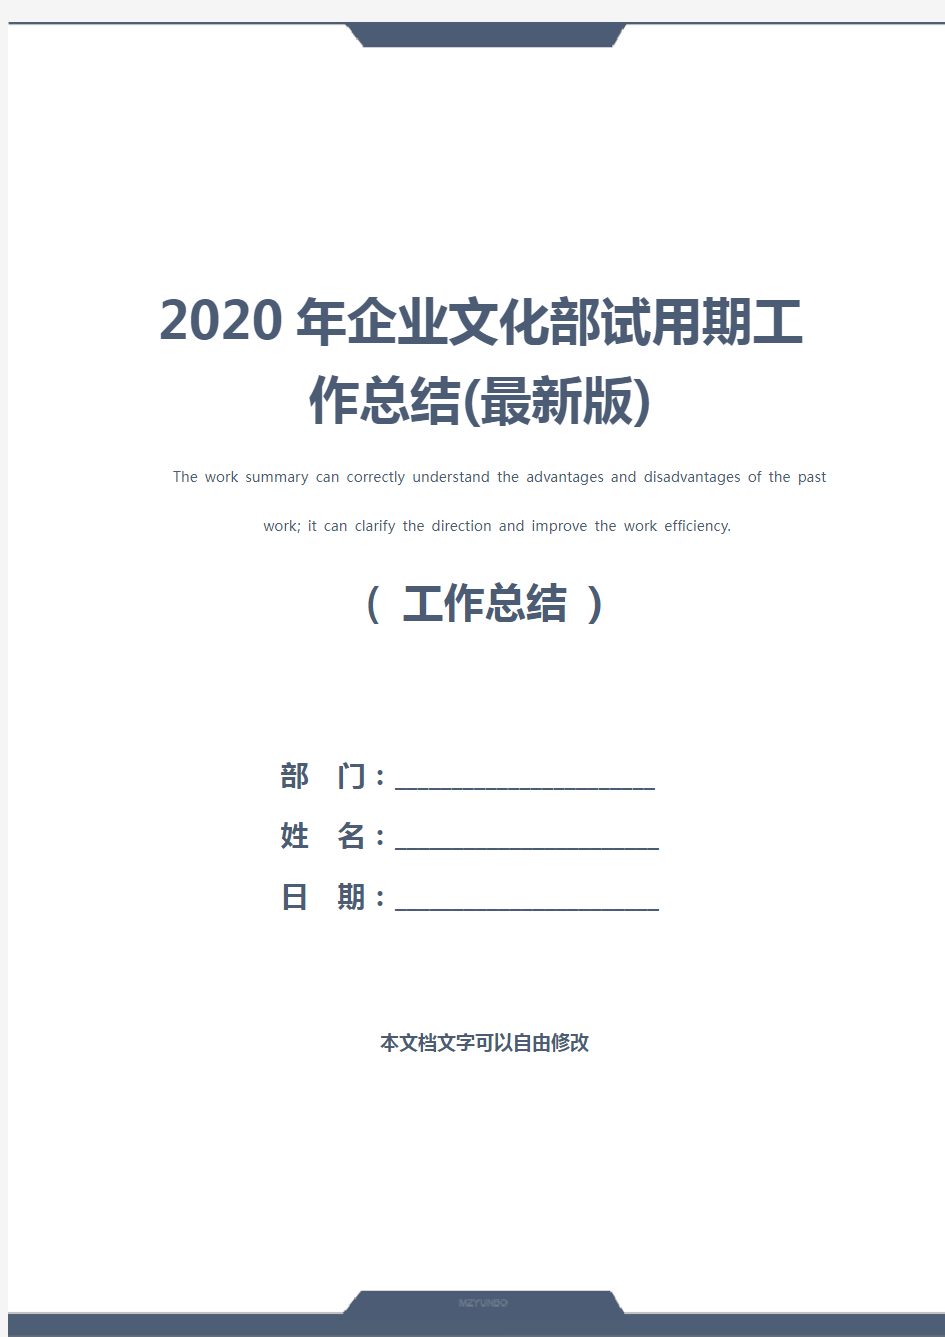 2020年企业文化部试用期工作总结(最新版)